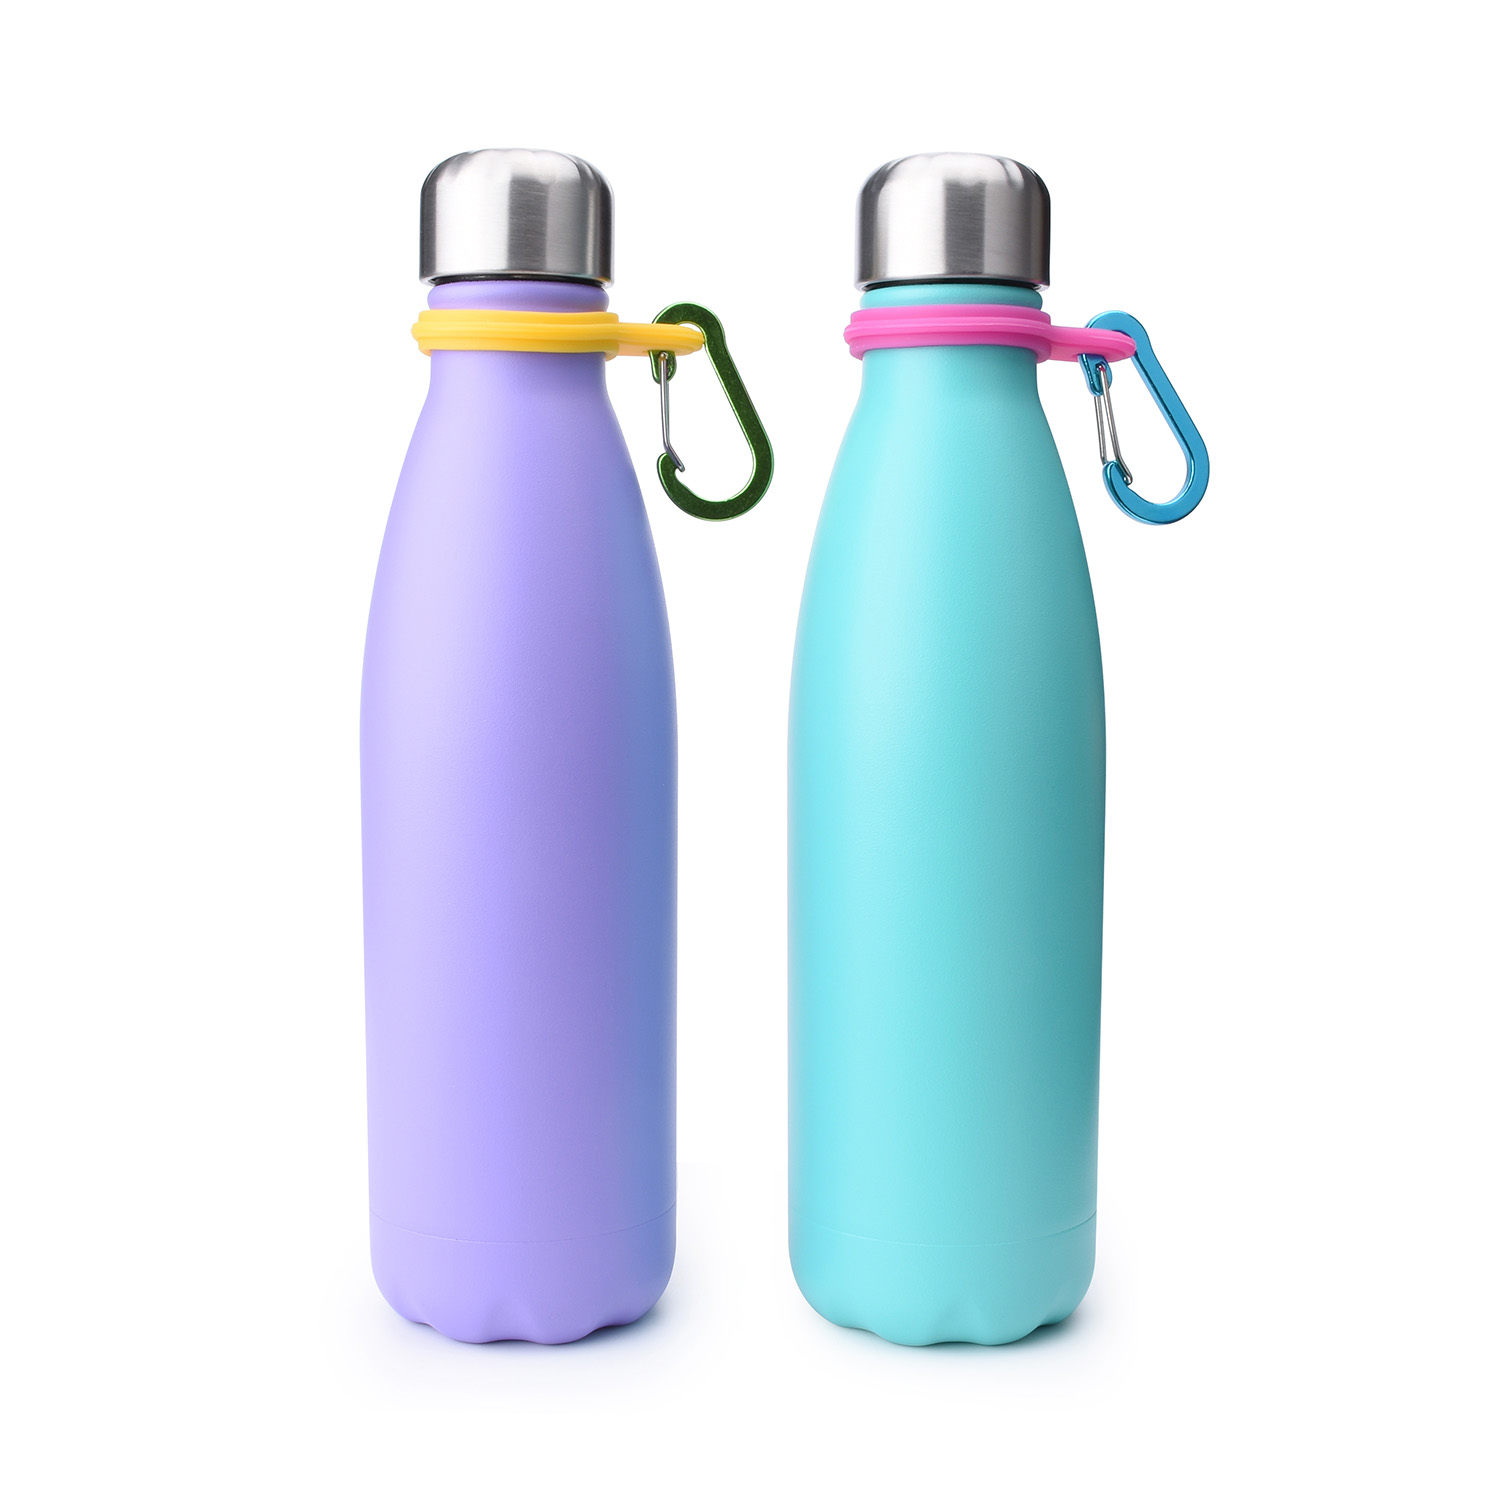 https://www.waterbottle.tech/wp-content/uploads/2018/10/water-bottle-with-carabiner-500-ml-S121799-2.jpg